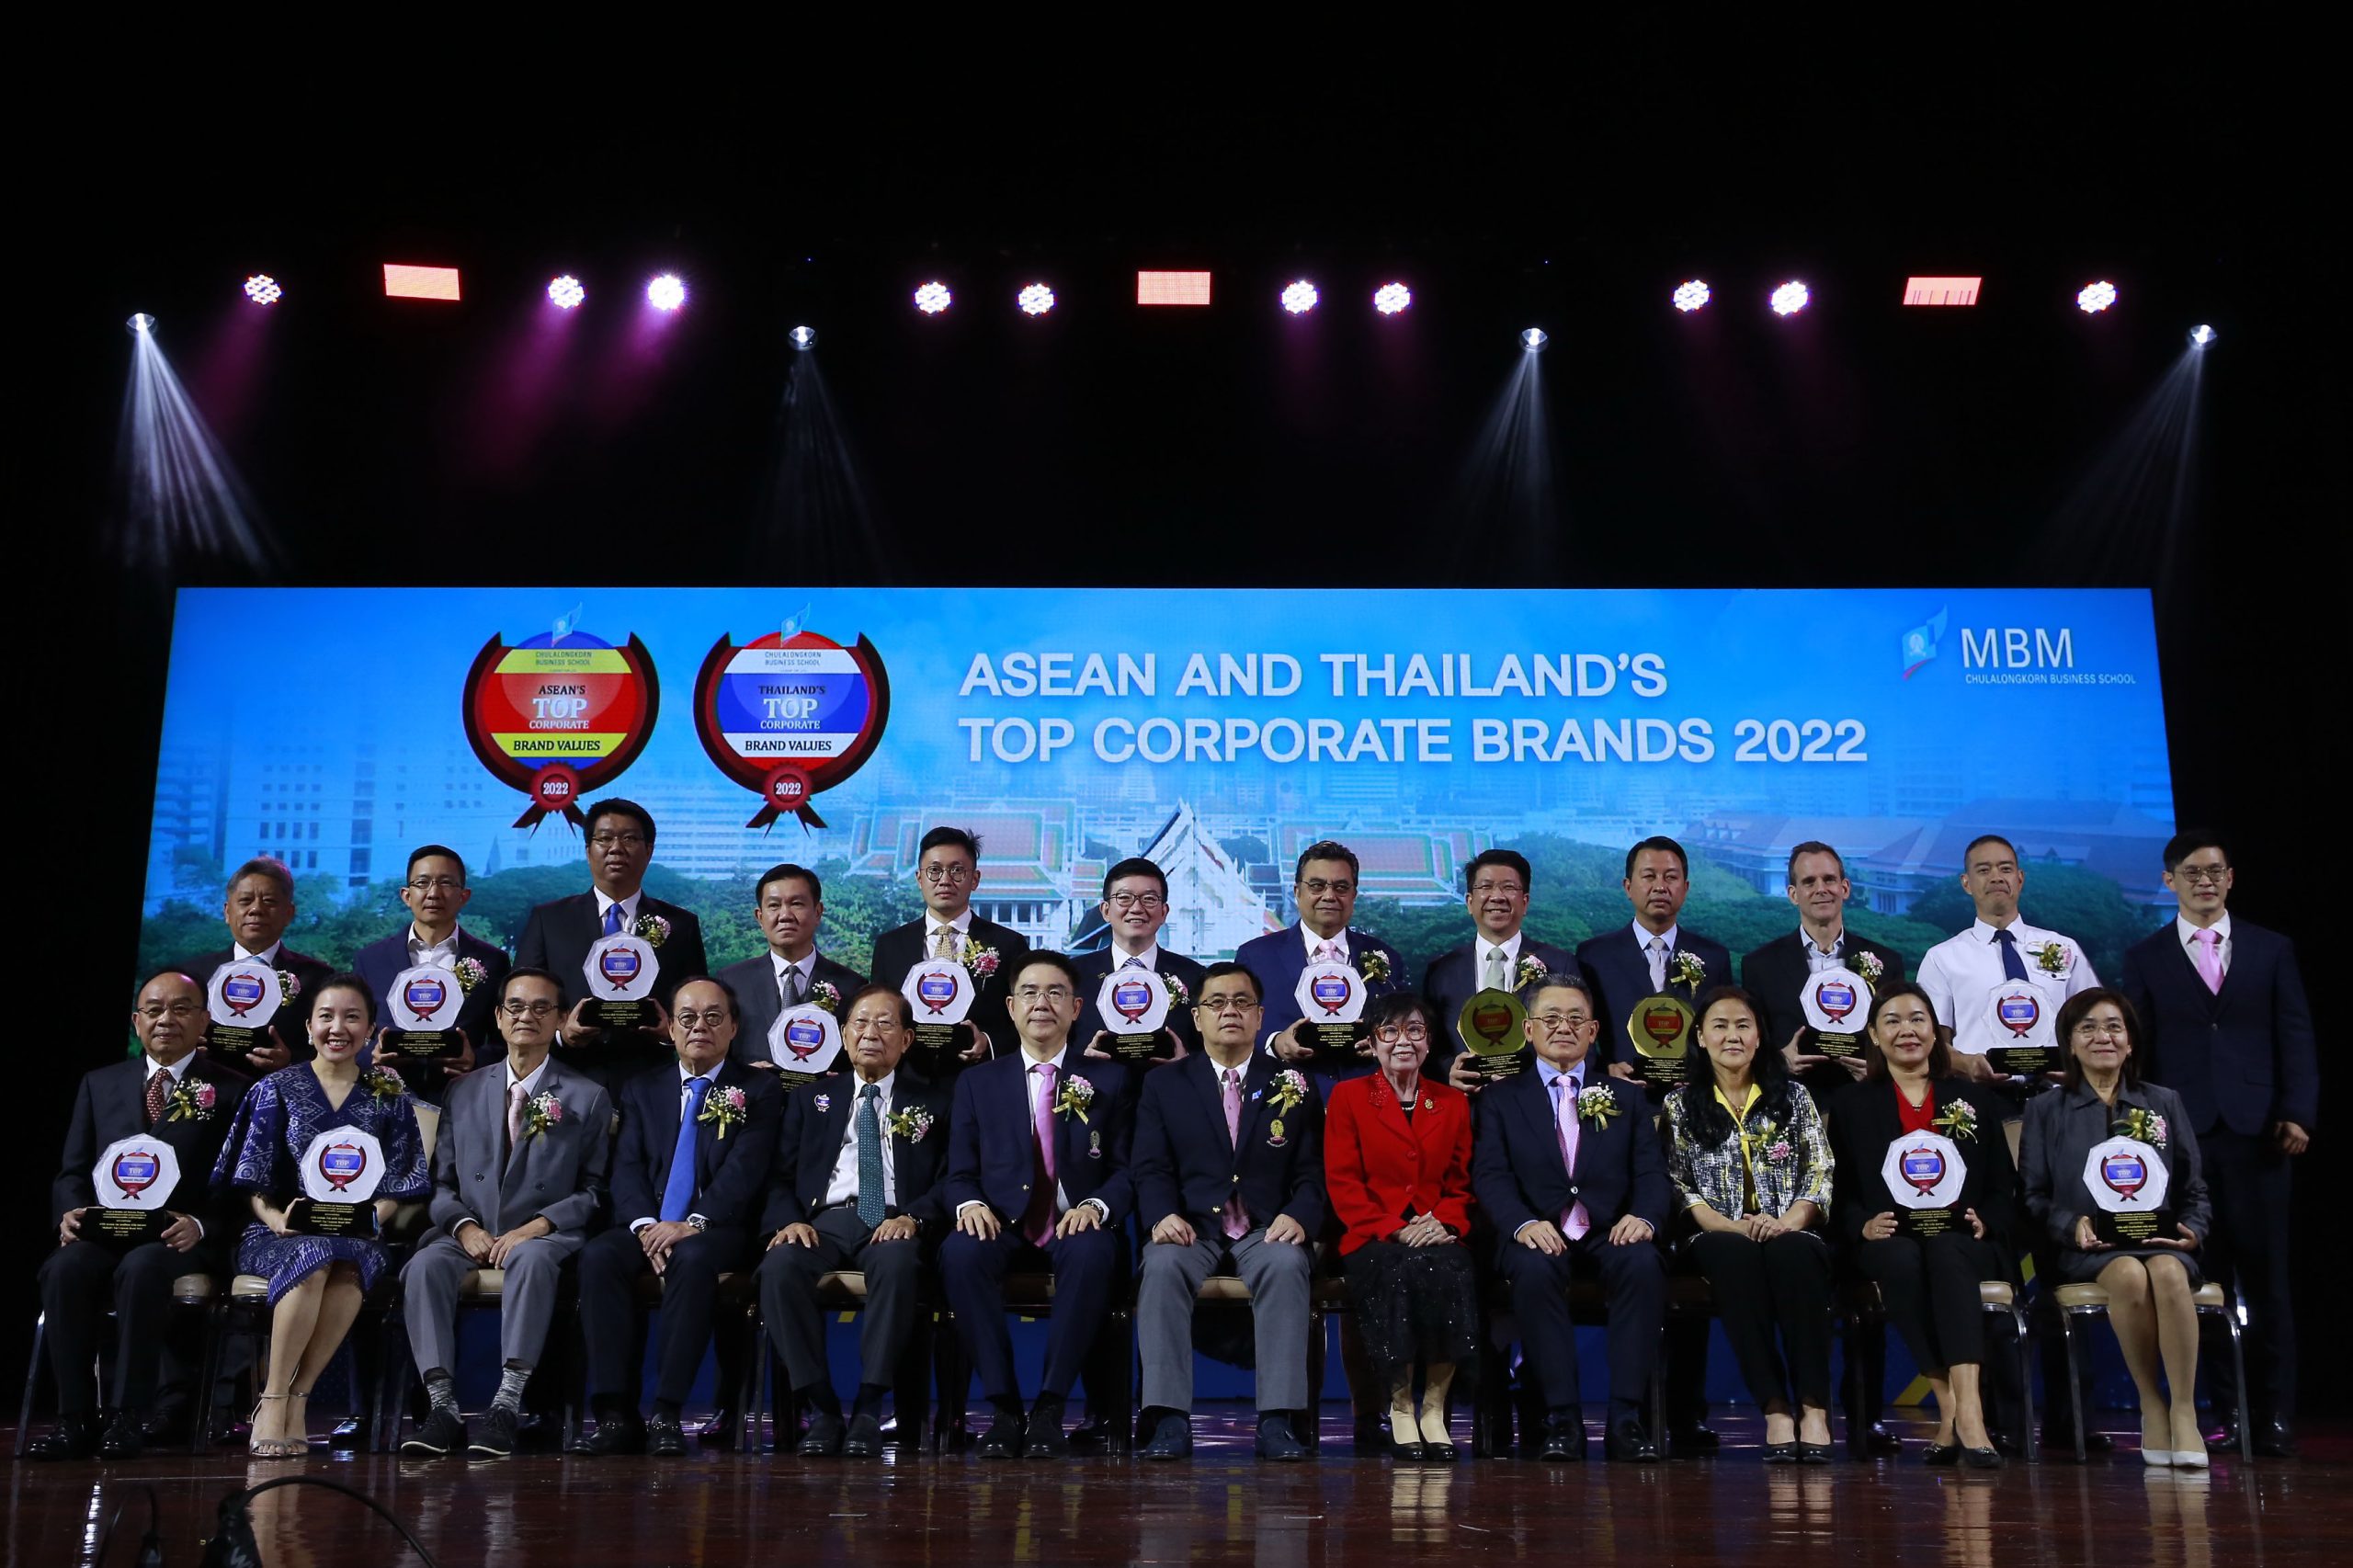 จุฬาฯ มอบรางวัล ASEAN and Thailand’s Top Corporate Brands 2022 แก่องค์กรที่มีมูลค่าแบรนด์องค์กรสูงสุดประจำปี พ.ศ. 2565